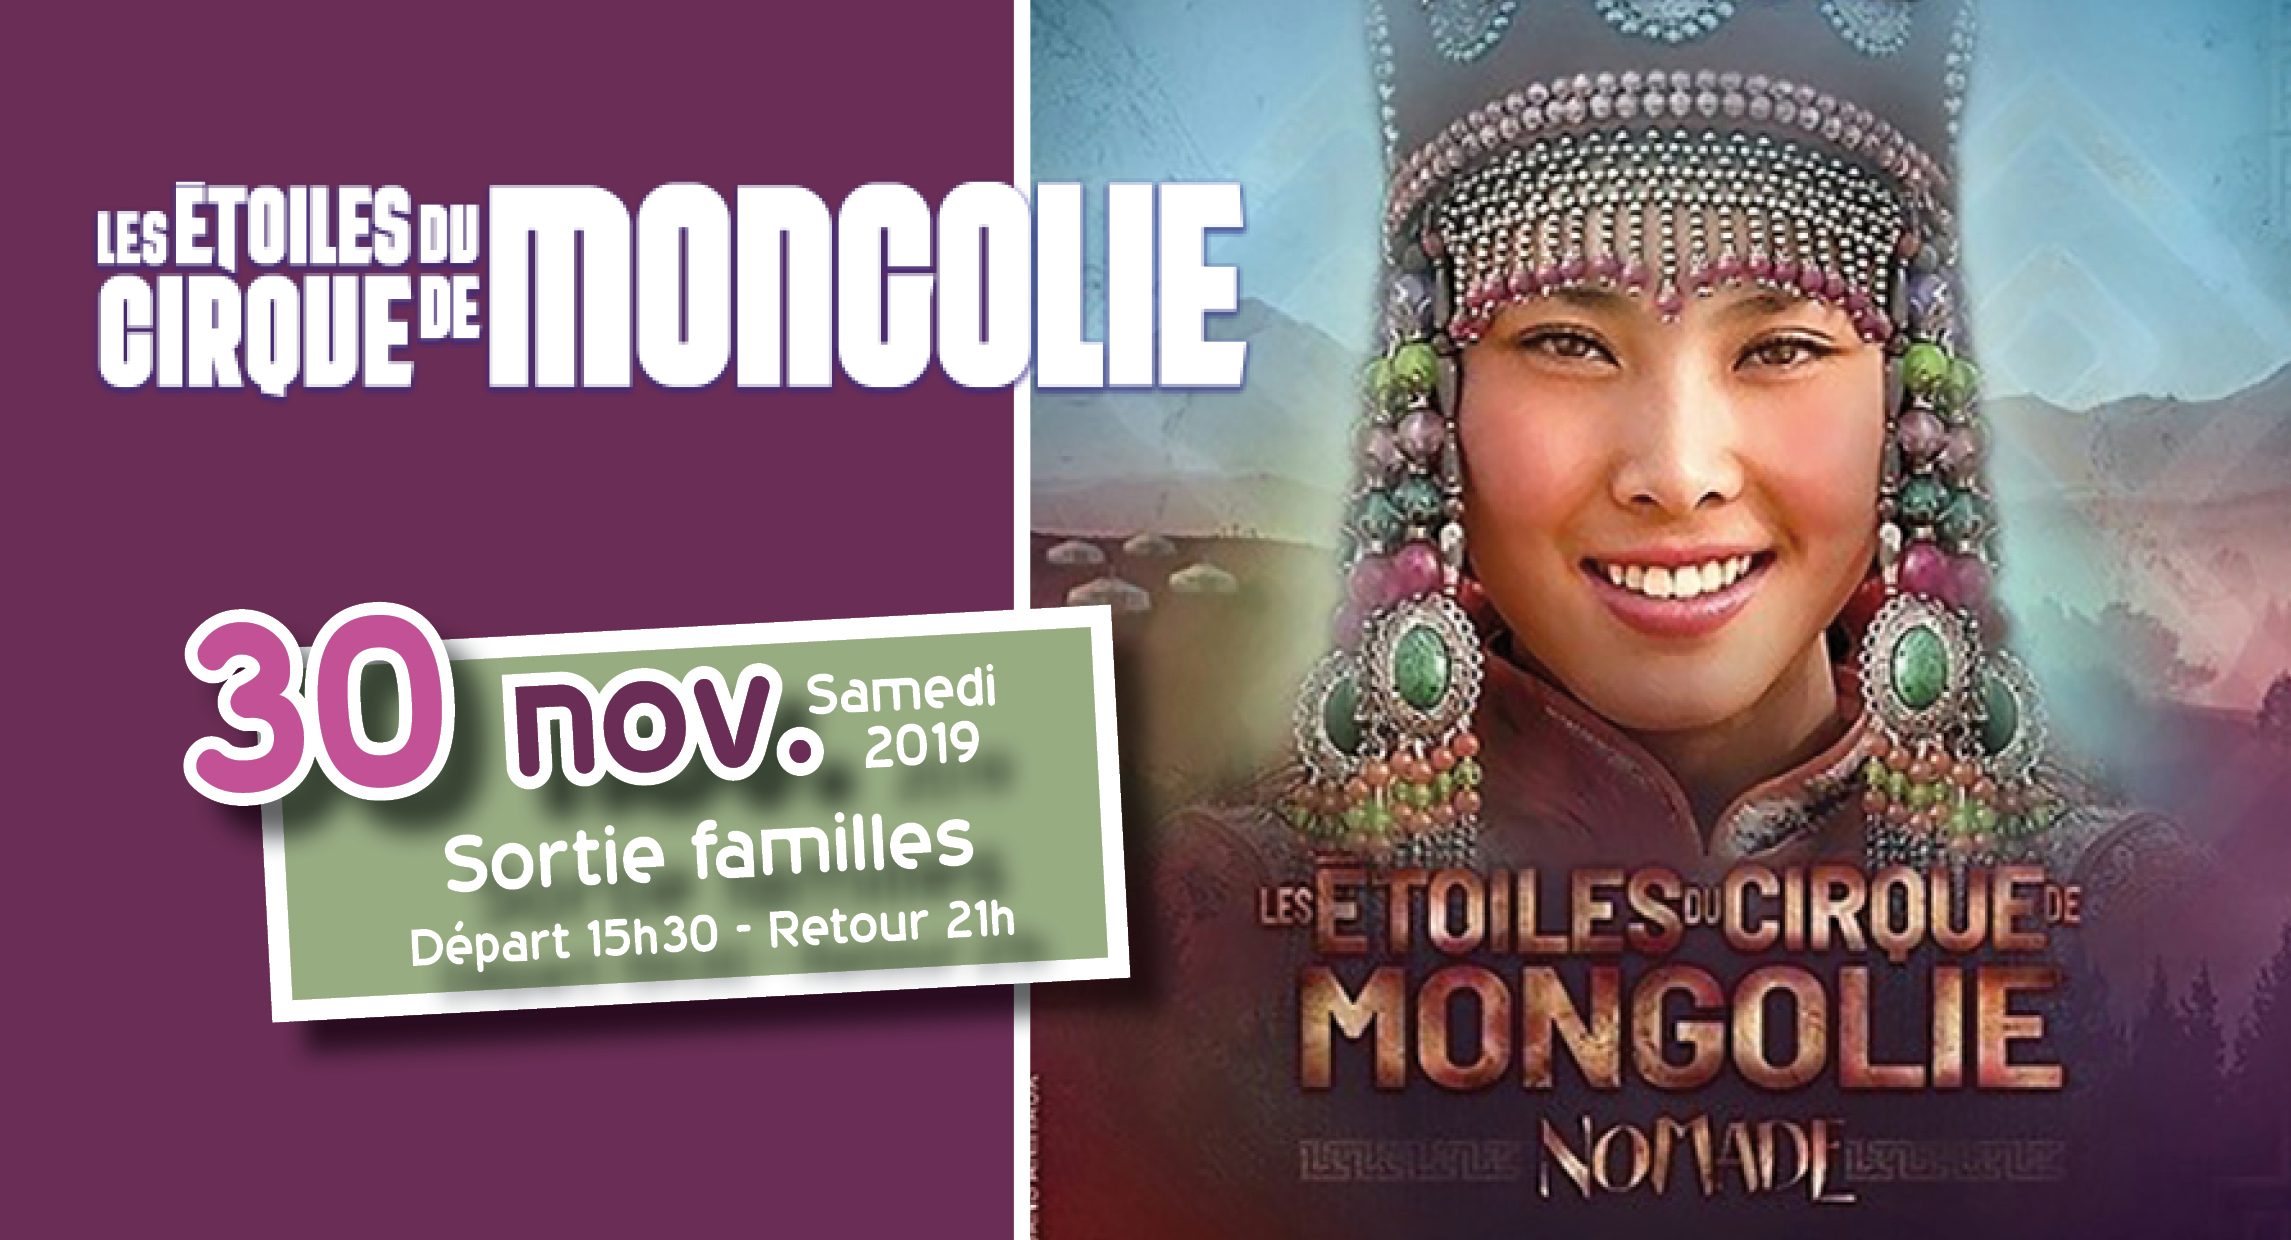 Le Cirque de Mongolie nov 2019